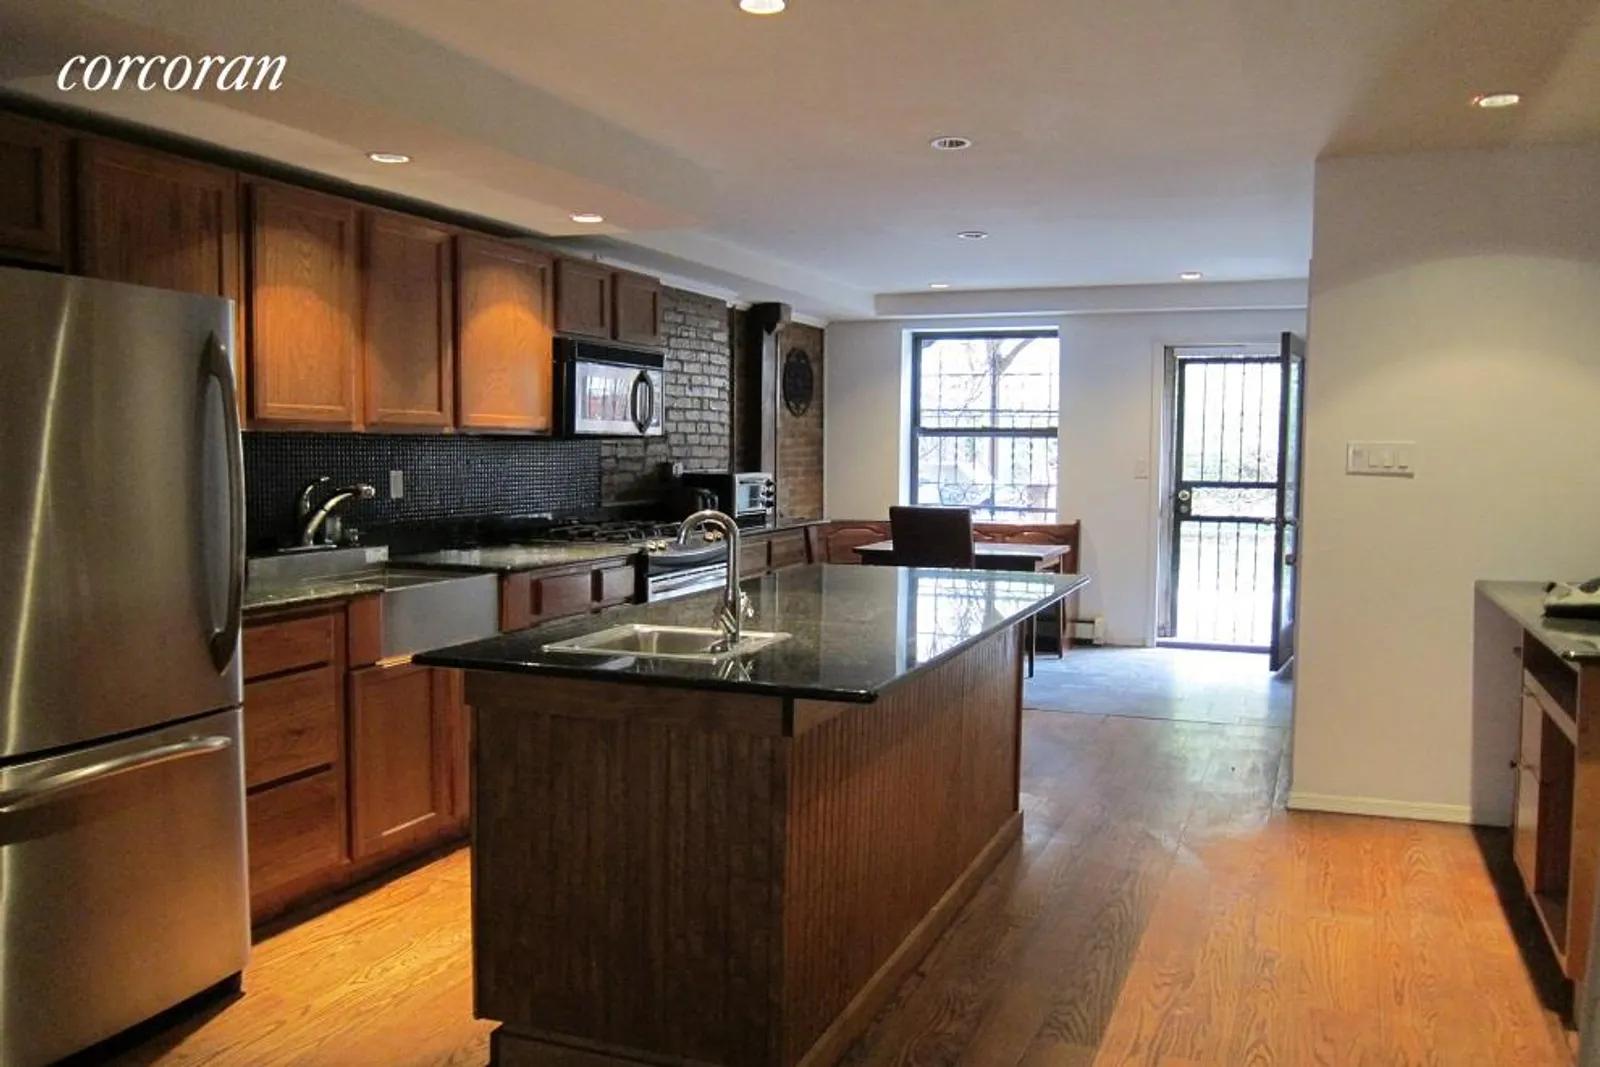 New York City Real Estate | View 310 West 140 Street | Duplex Kitchen | View 3